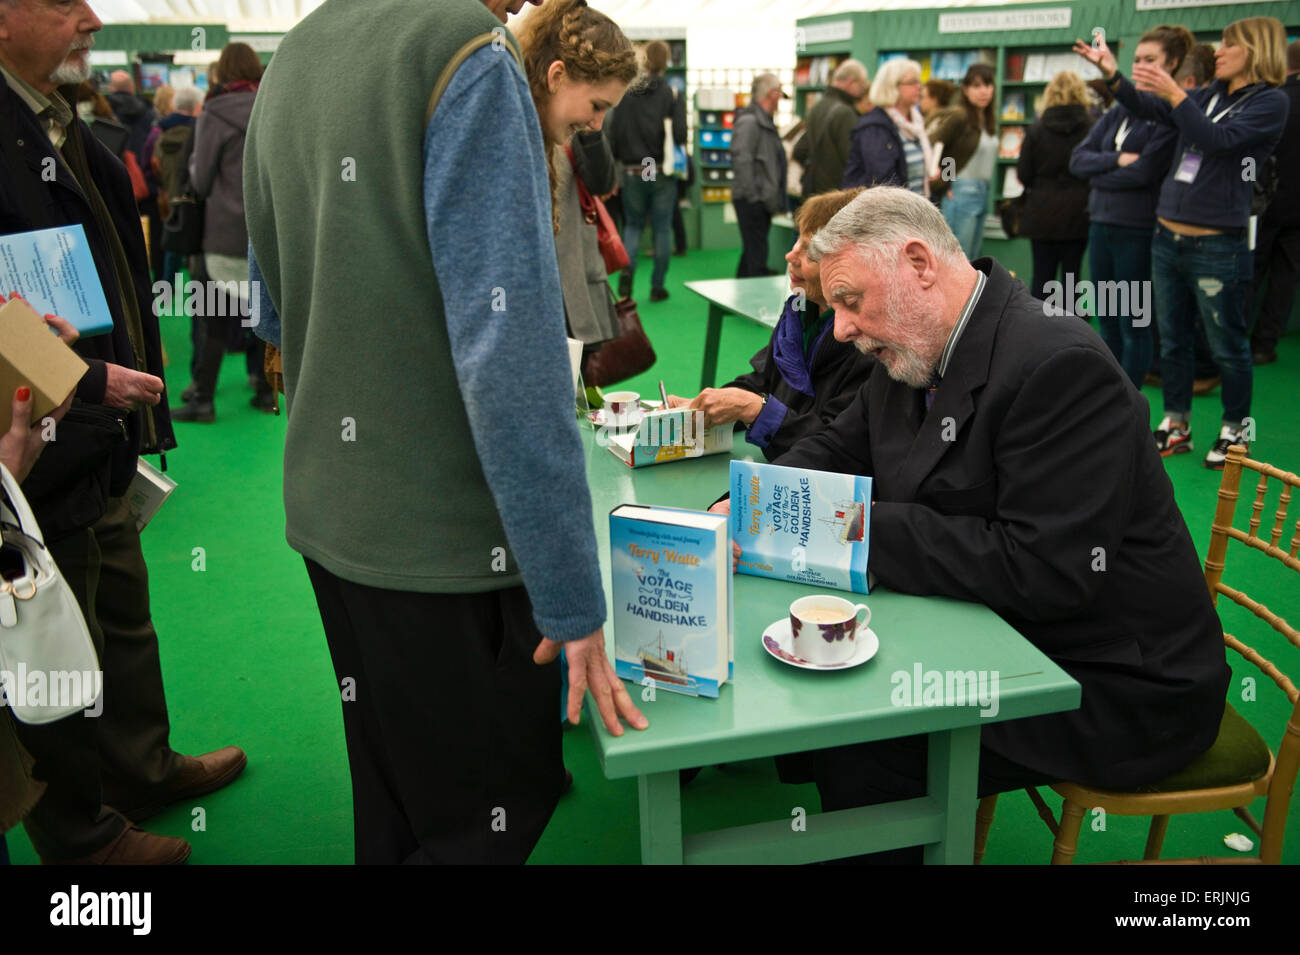 Celia Imrie & Terry Waite Autoren Signierstunde unter Massen von Fans im Bookshop bei Hay Festival 2015 Stockfoto